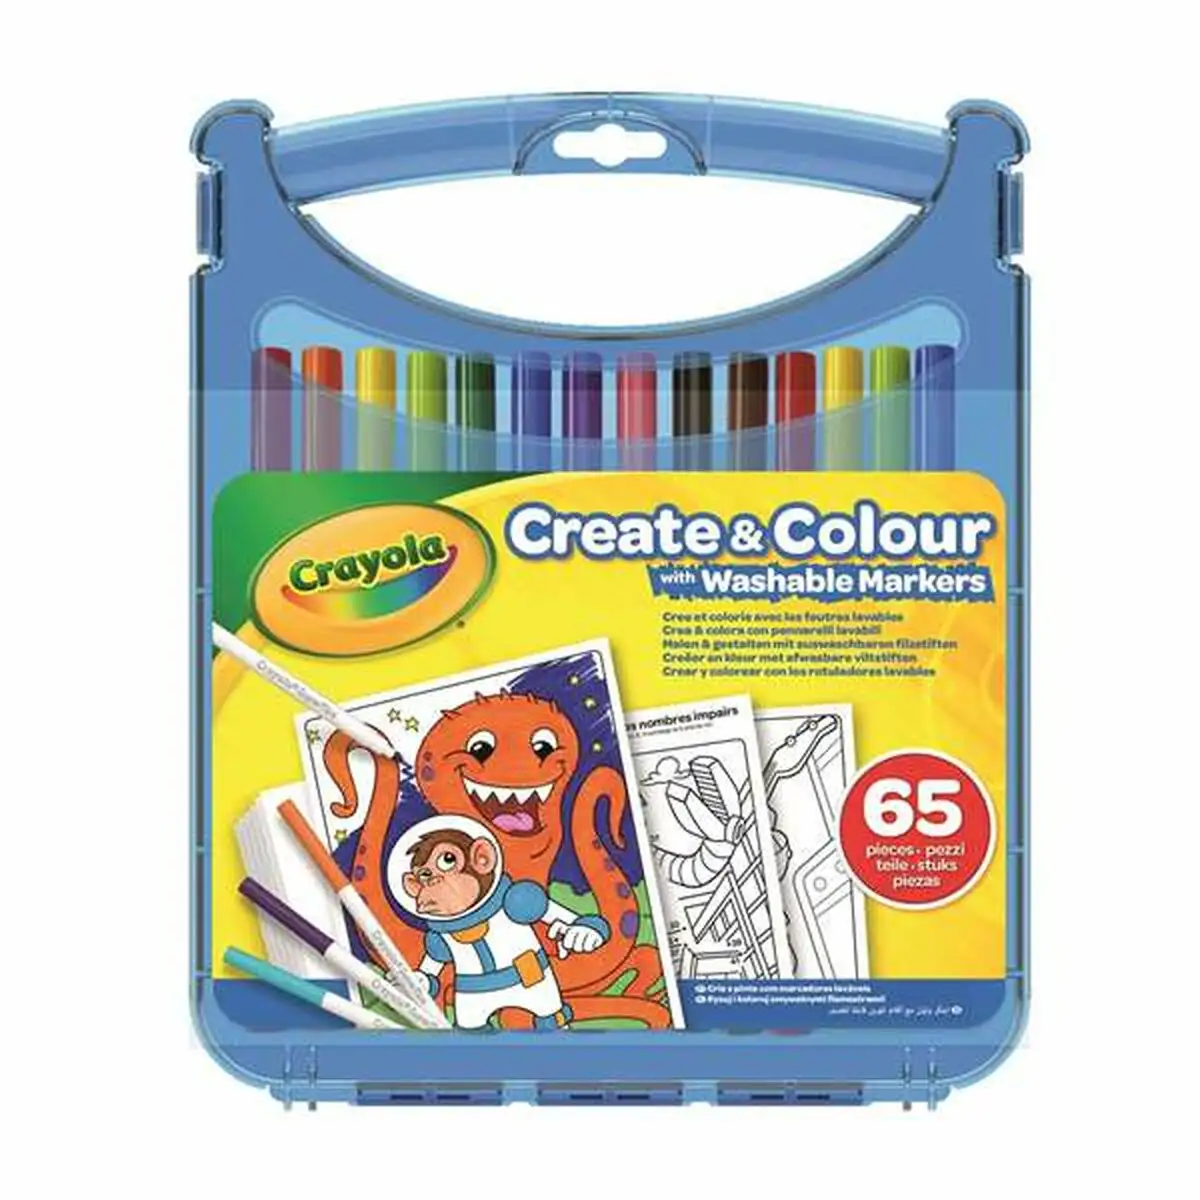 Ensemble de marqueurs crayola lavable 65 pieces_1391. DIAYTAR SENEGAL - L'Art de Vivre l'Excellence au Quotidien. Explorez notre gamme et choisissez des produits qui ajoutent une note de prestige à votre vie.